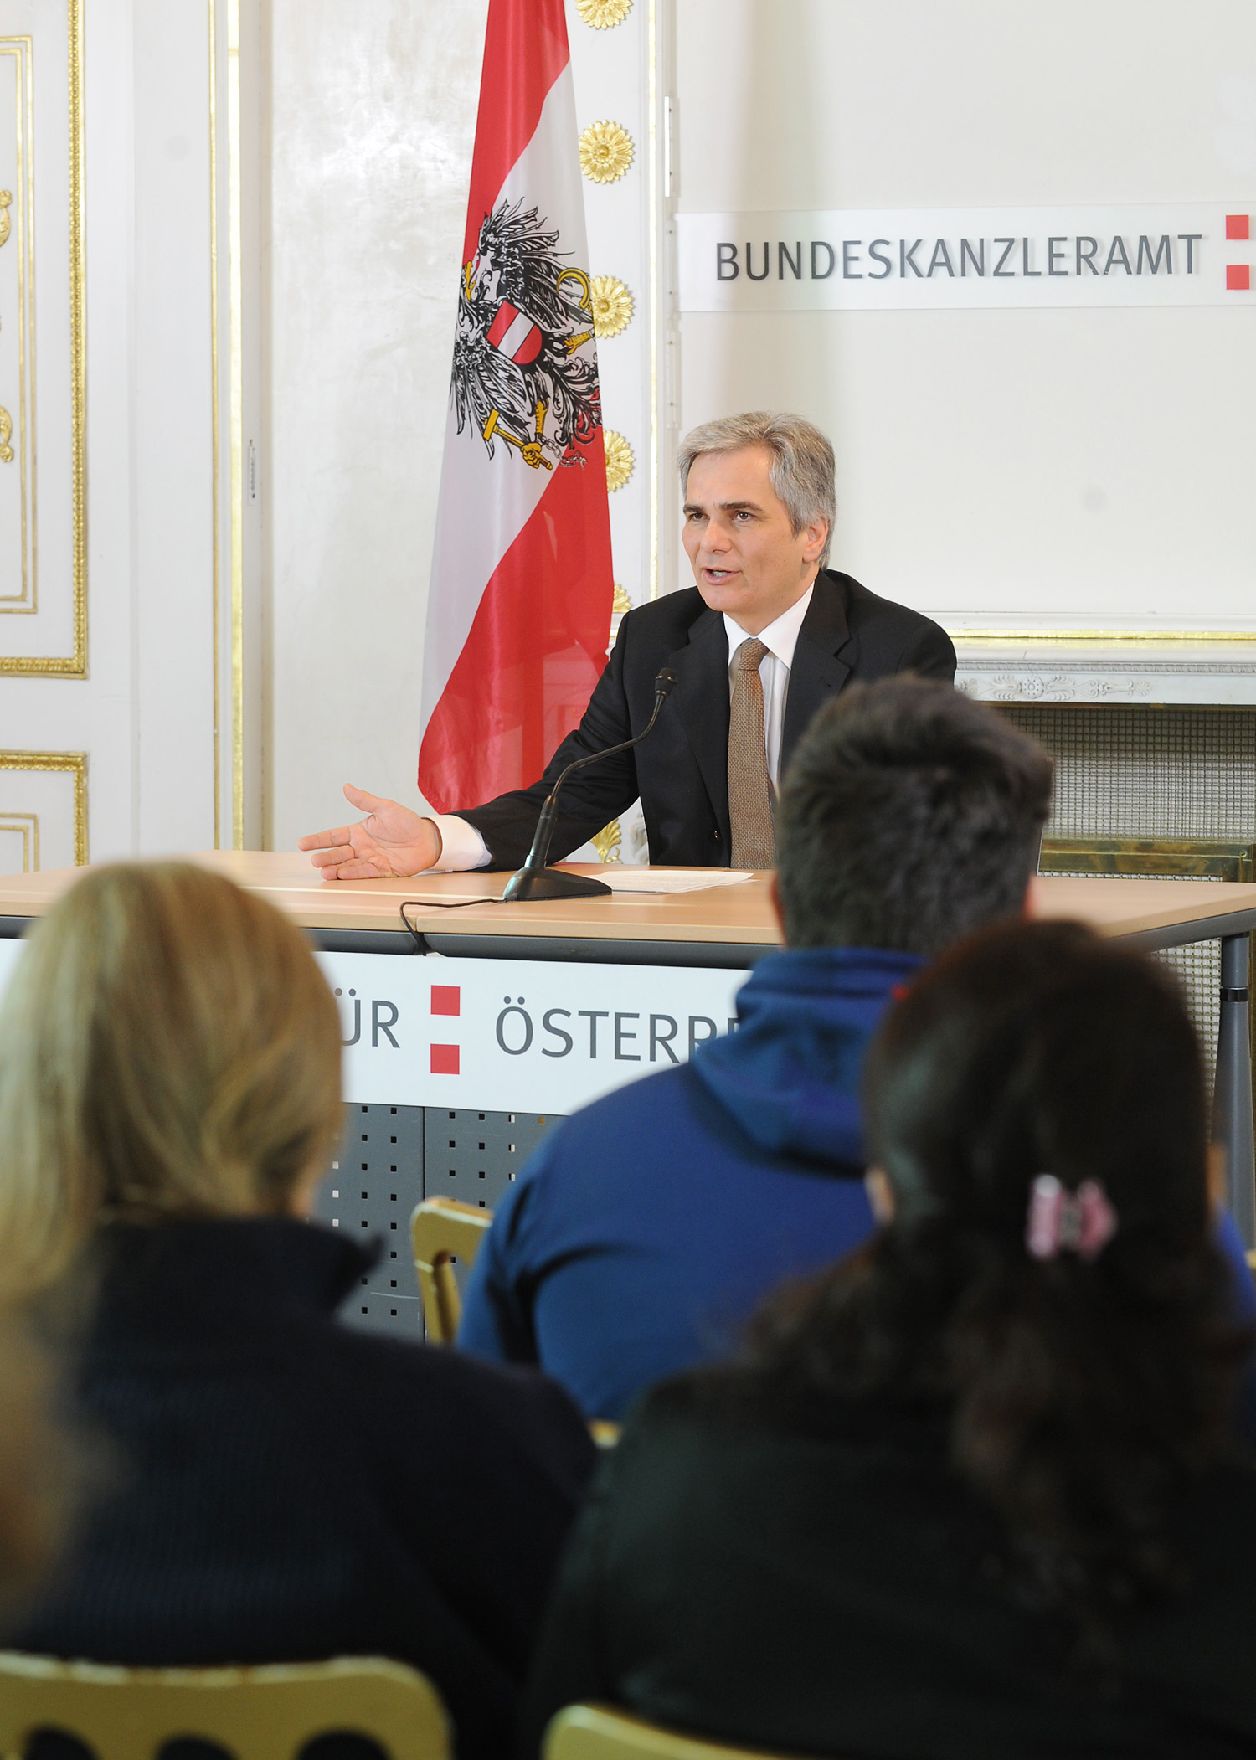 Bundeskanzler Werner Faymann beim Pressefoyer nach dem Ministerrat am 7. Dezember 2010 im Bundeskanzleramt.